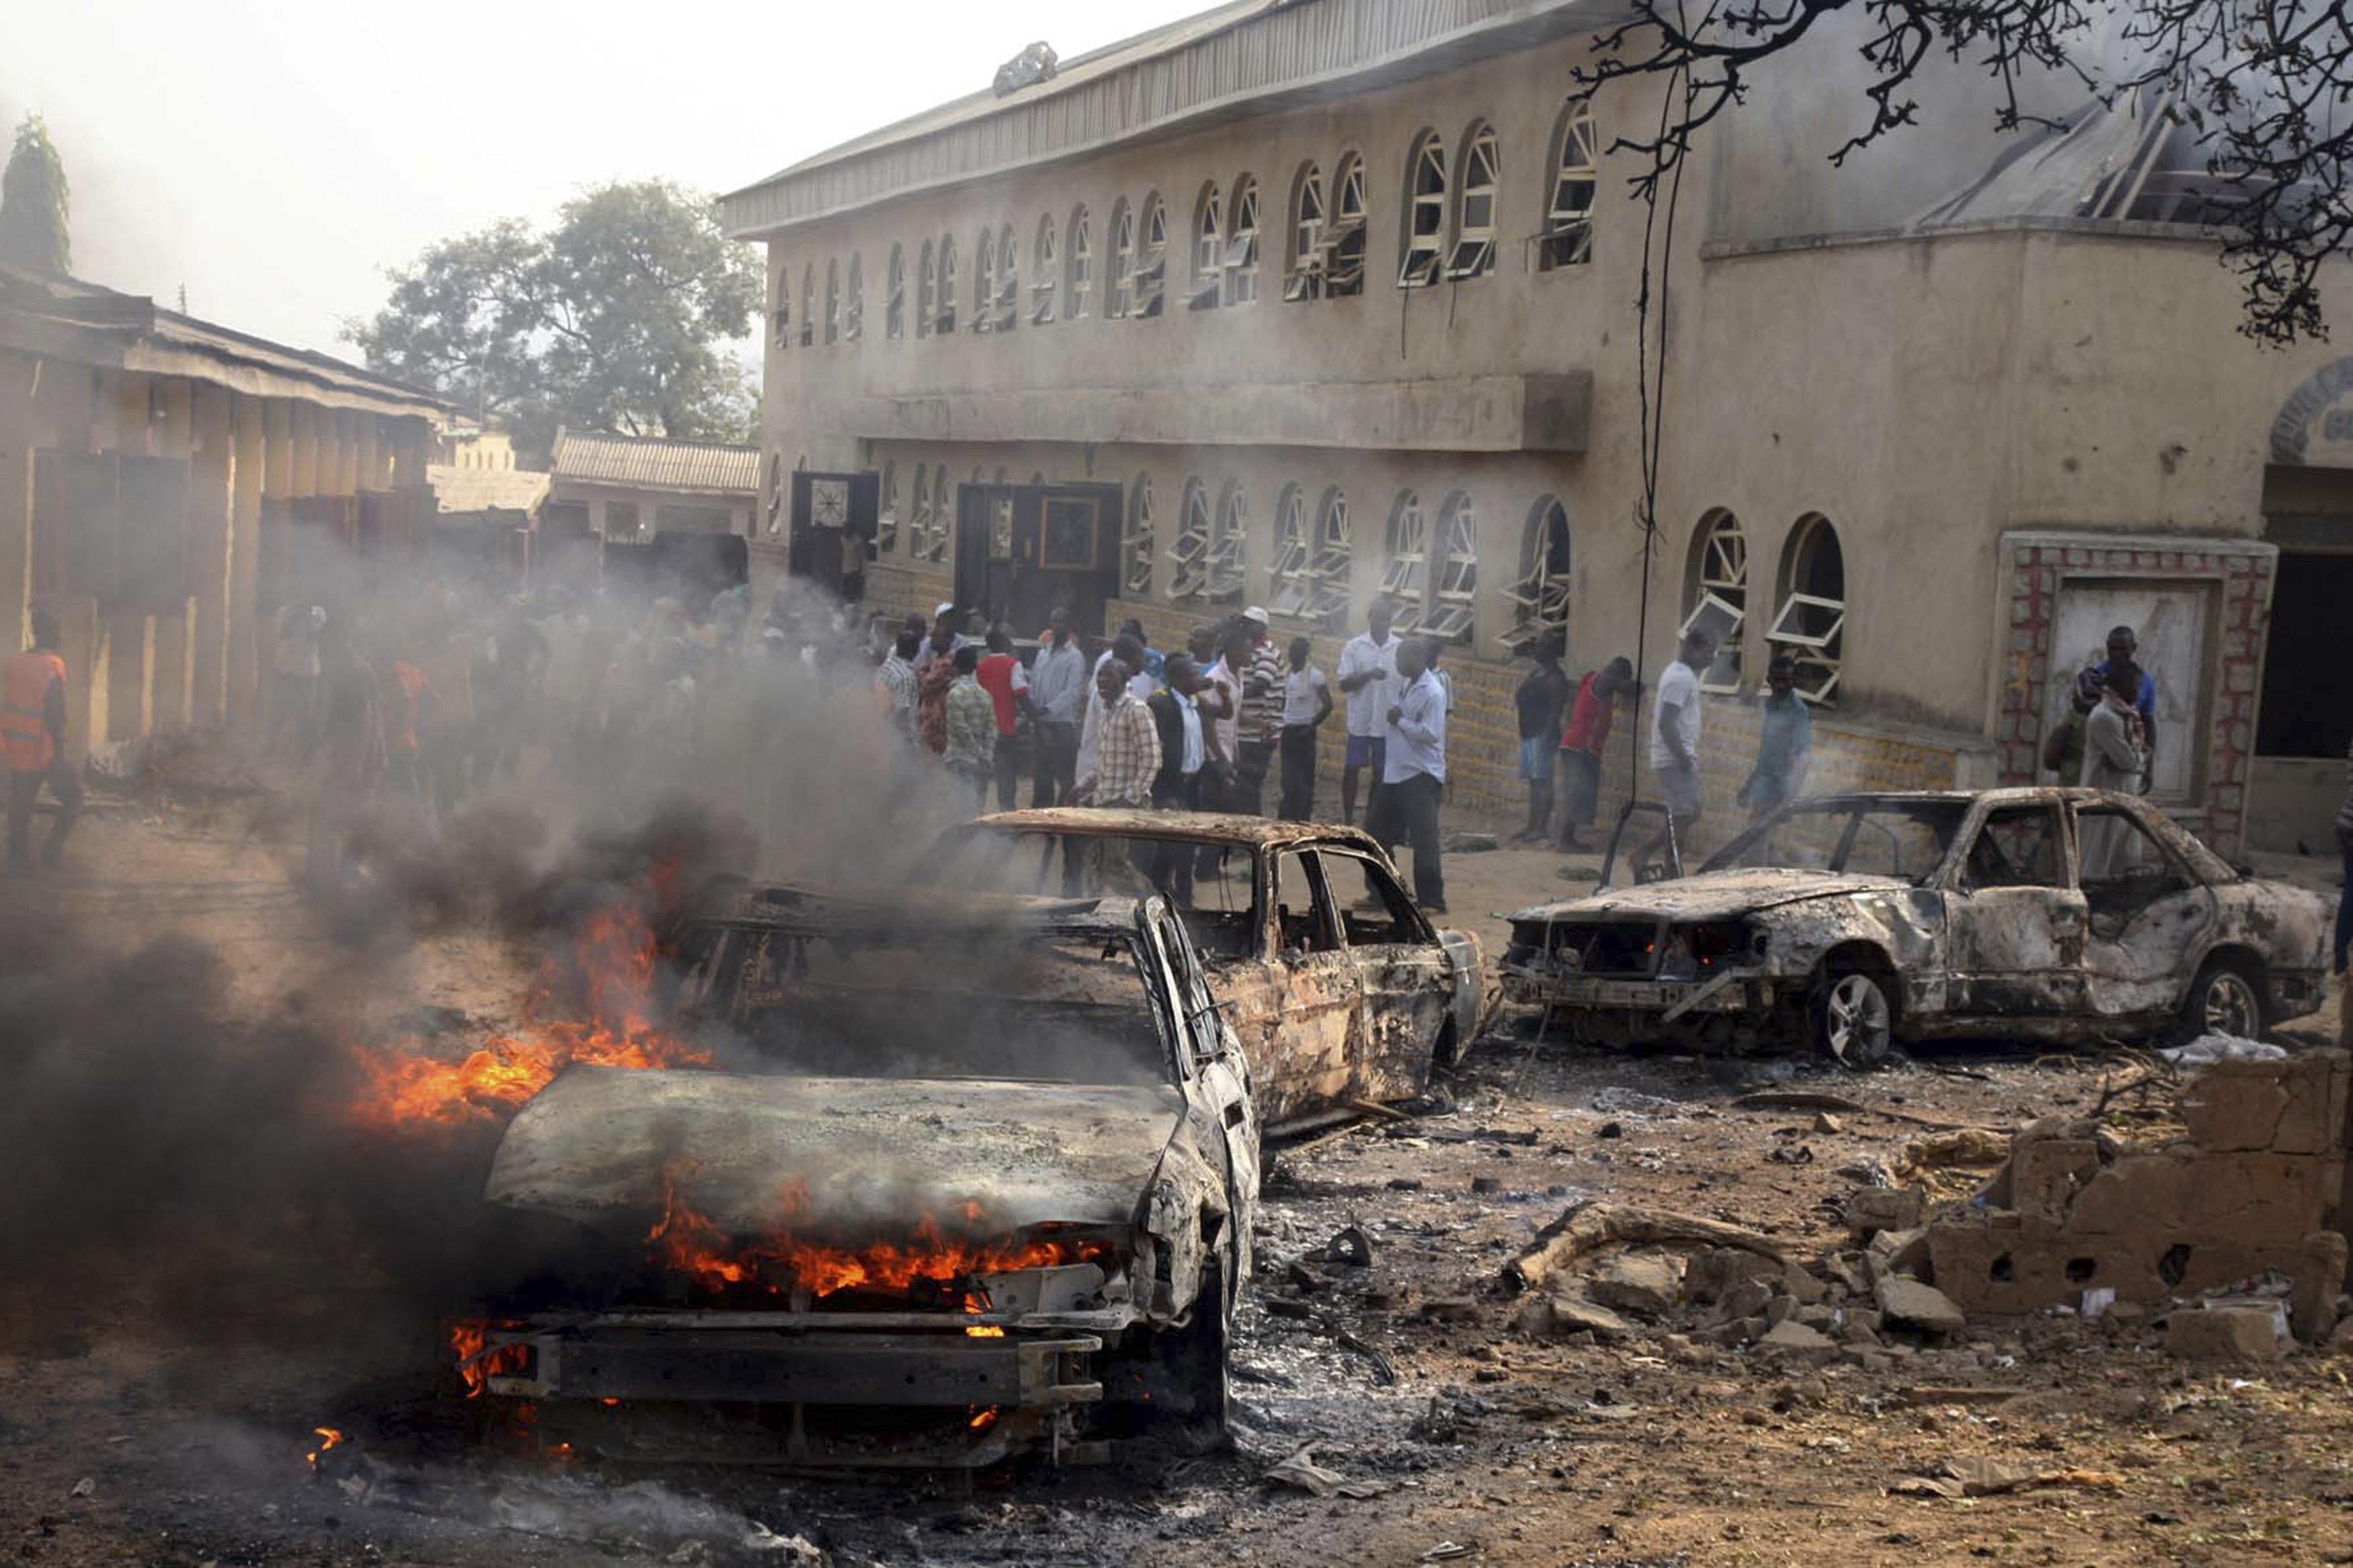 5 мая 2014 г. Атака Боко харам в Нигерии 2014. Теракт Боко харам в Нигерии. Атака Боко-харам в Нигерии 5-6 мая 2014. Атака Боко харам в Нигерии 300 погибших.